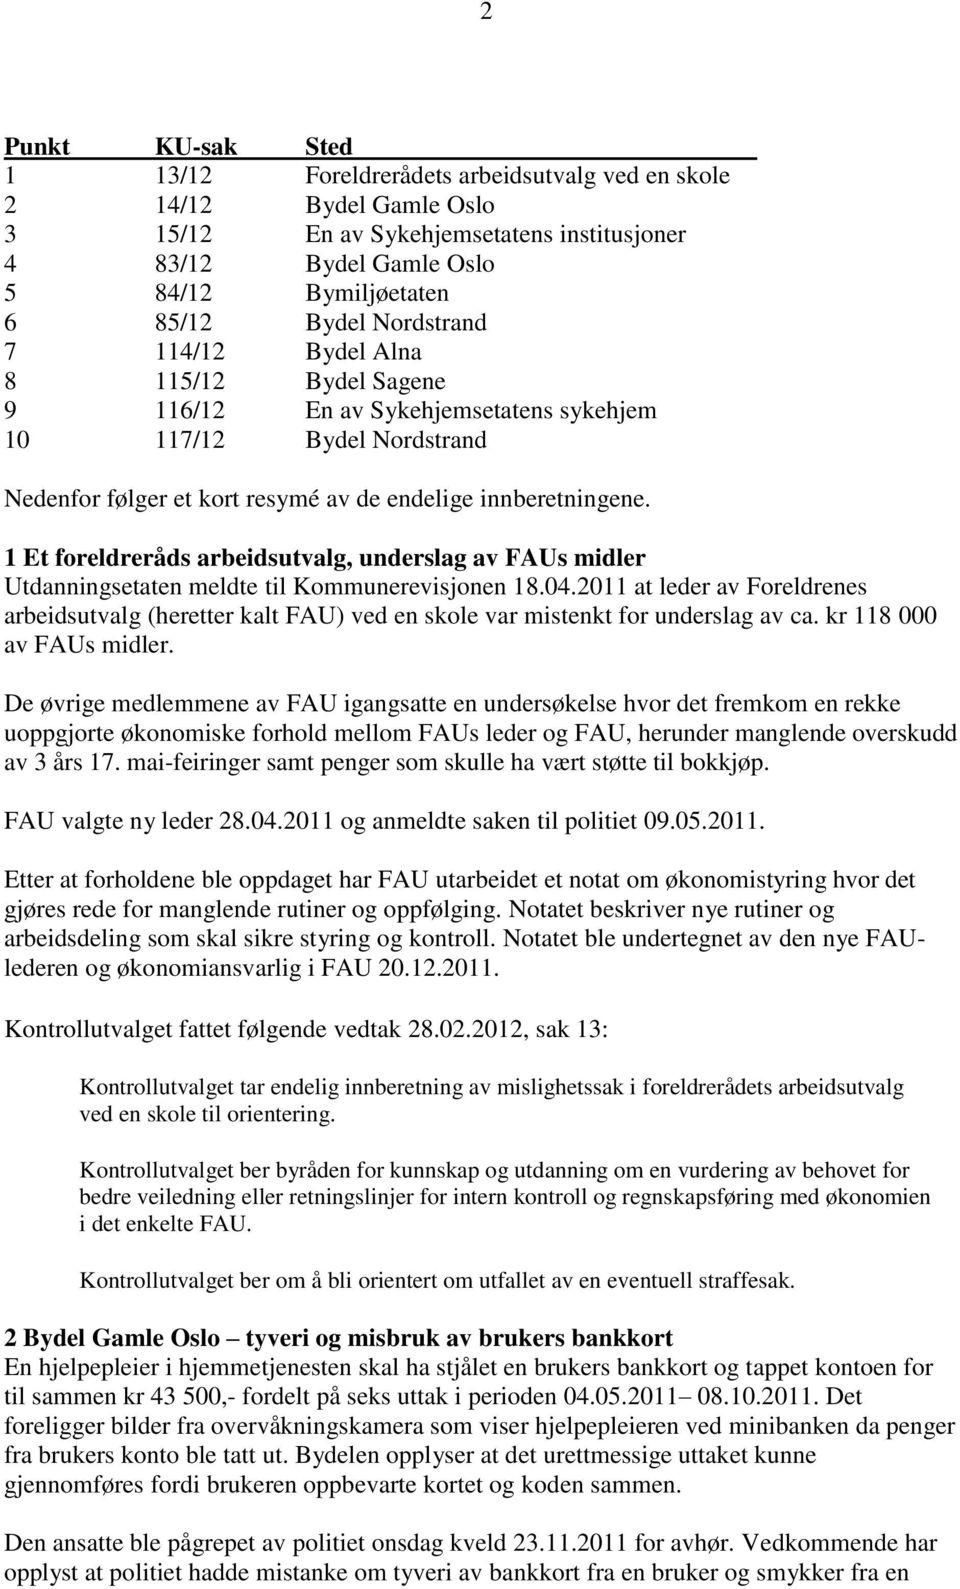 1 Et foreldreråds arbeidsutvalg, underslag av FAUs midler Utdanningsetaten meldte til Kommunerevisjonen 18.04.